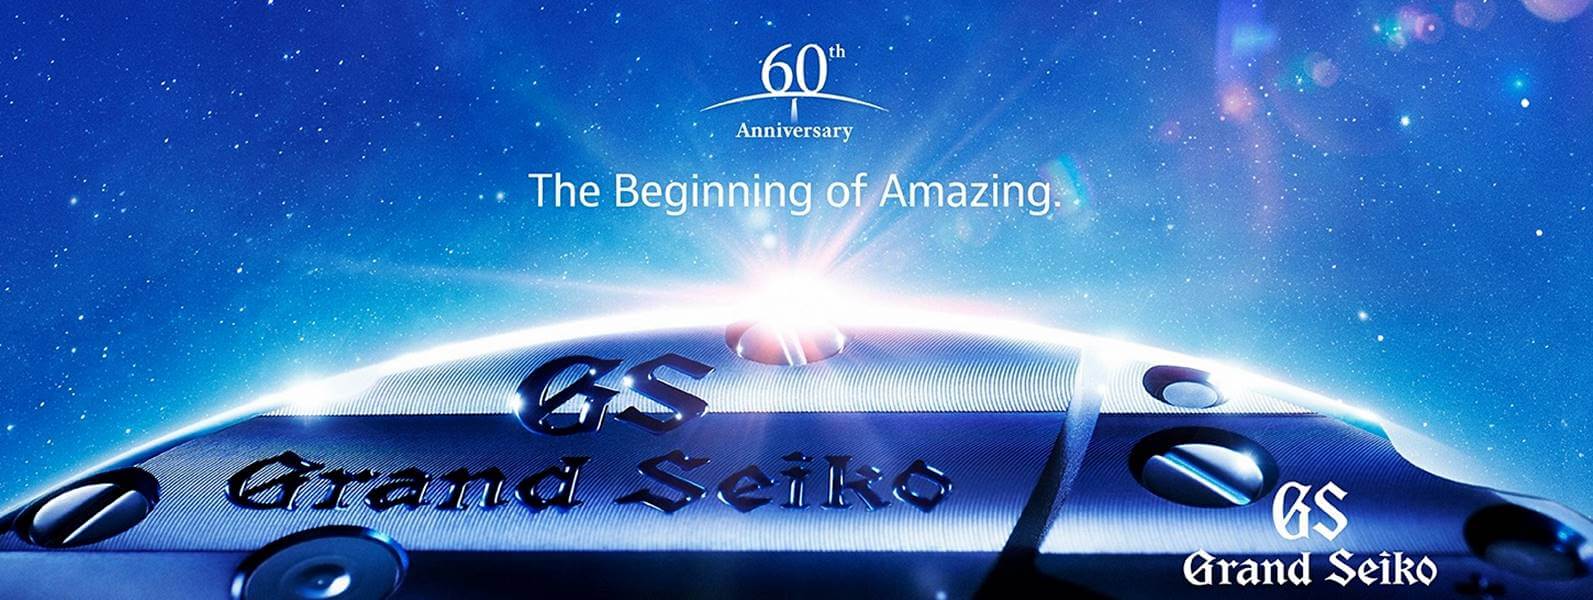 Grand Seiko – historia marki i najważniejsze osiągnięcia